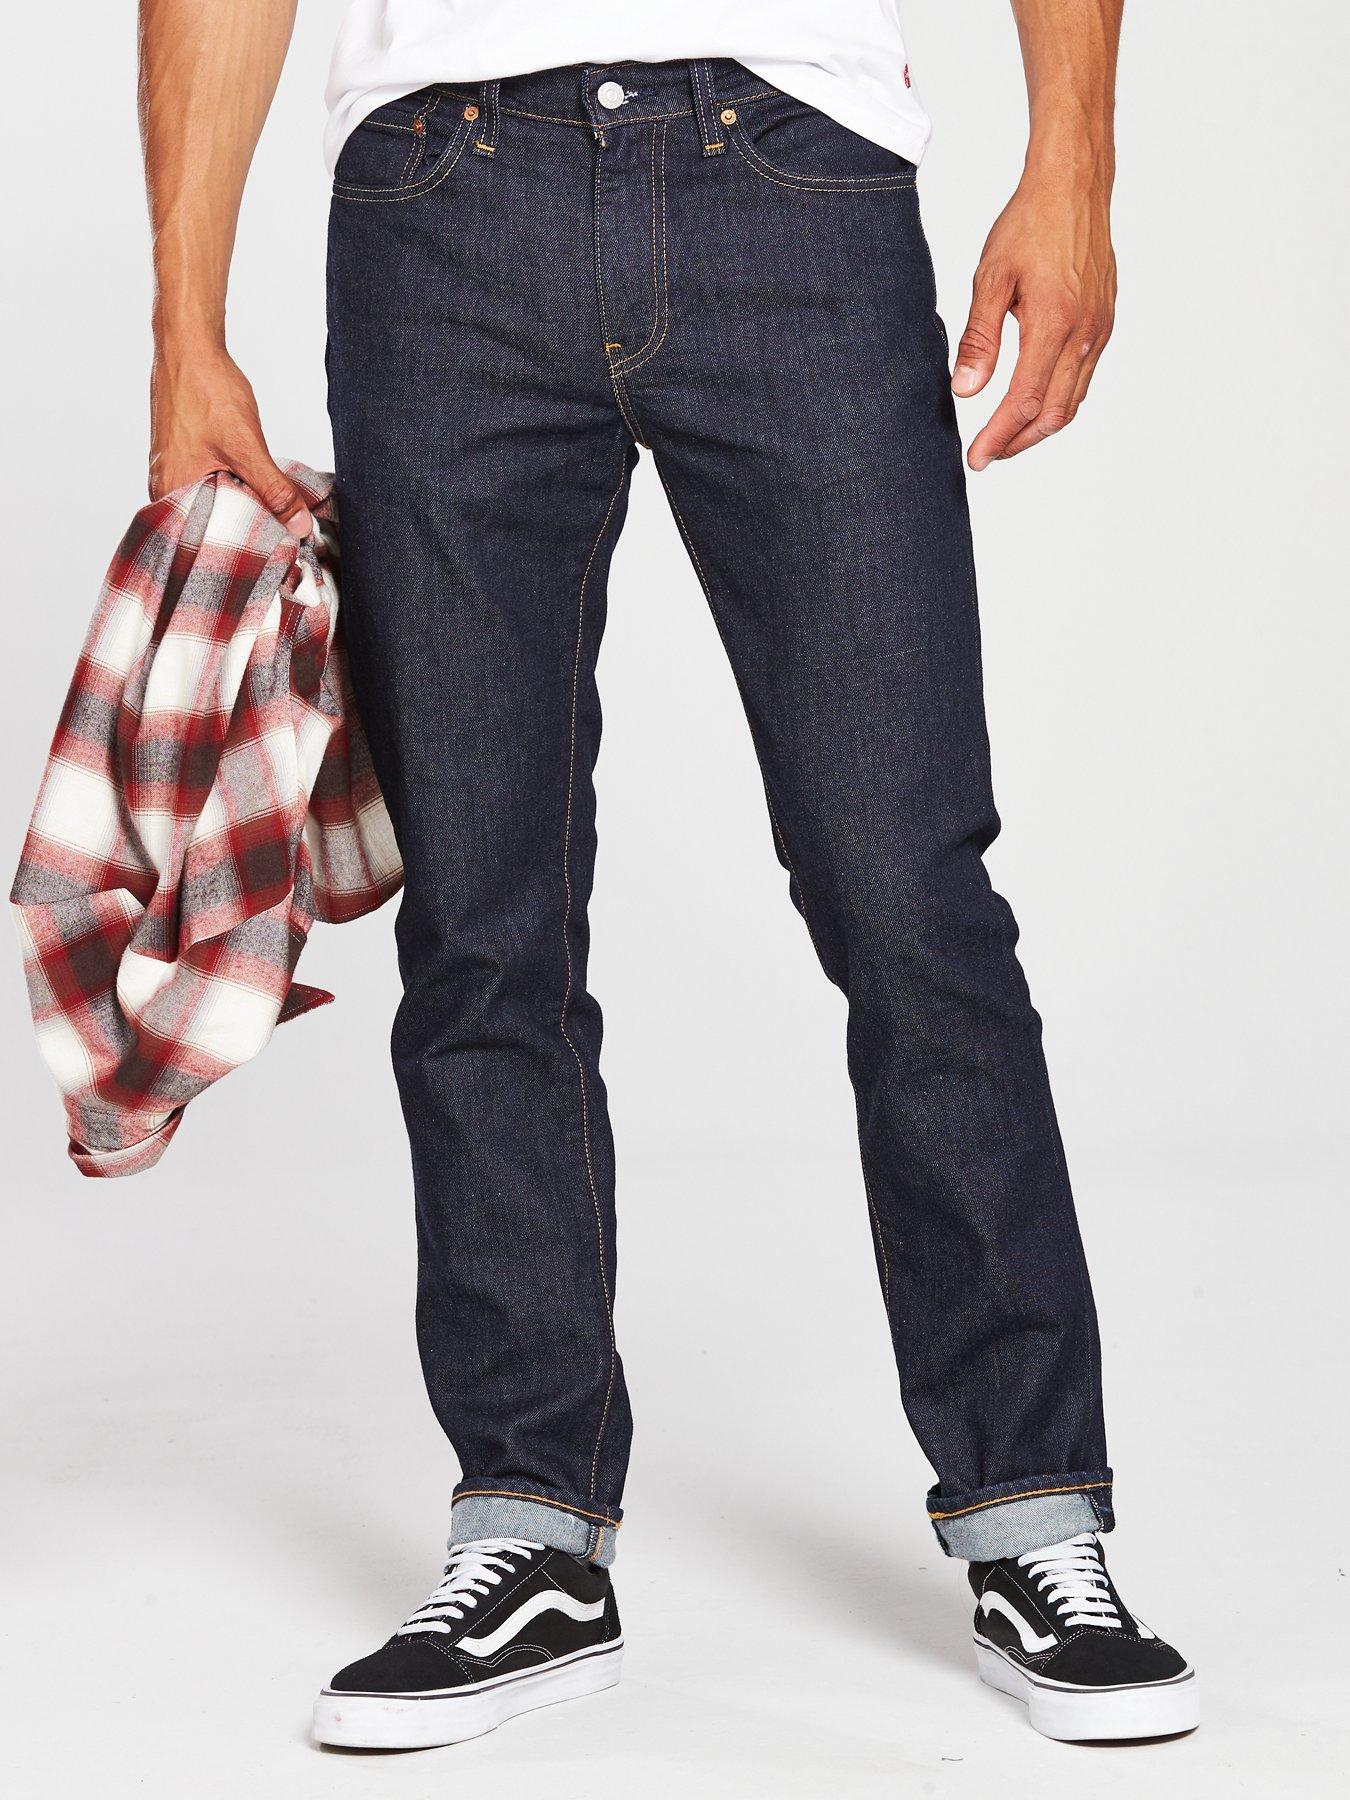 Levi's 511 Slim Fit Jeans - Rock Cod 